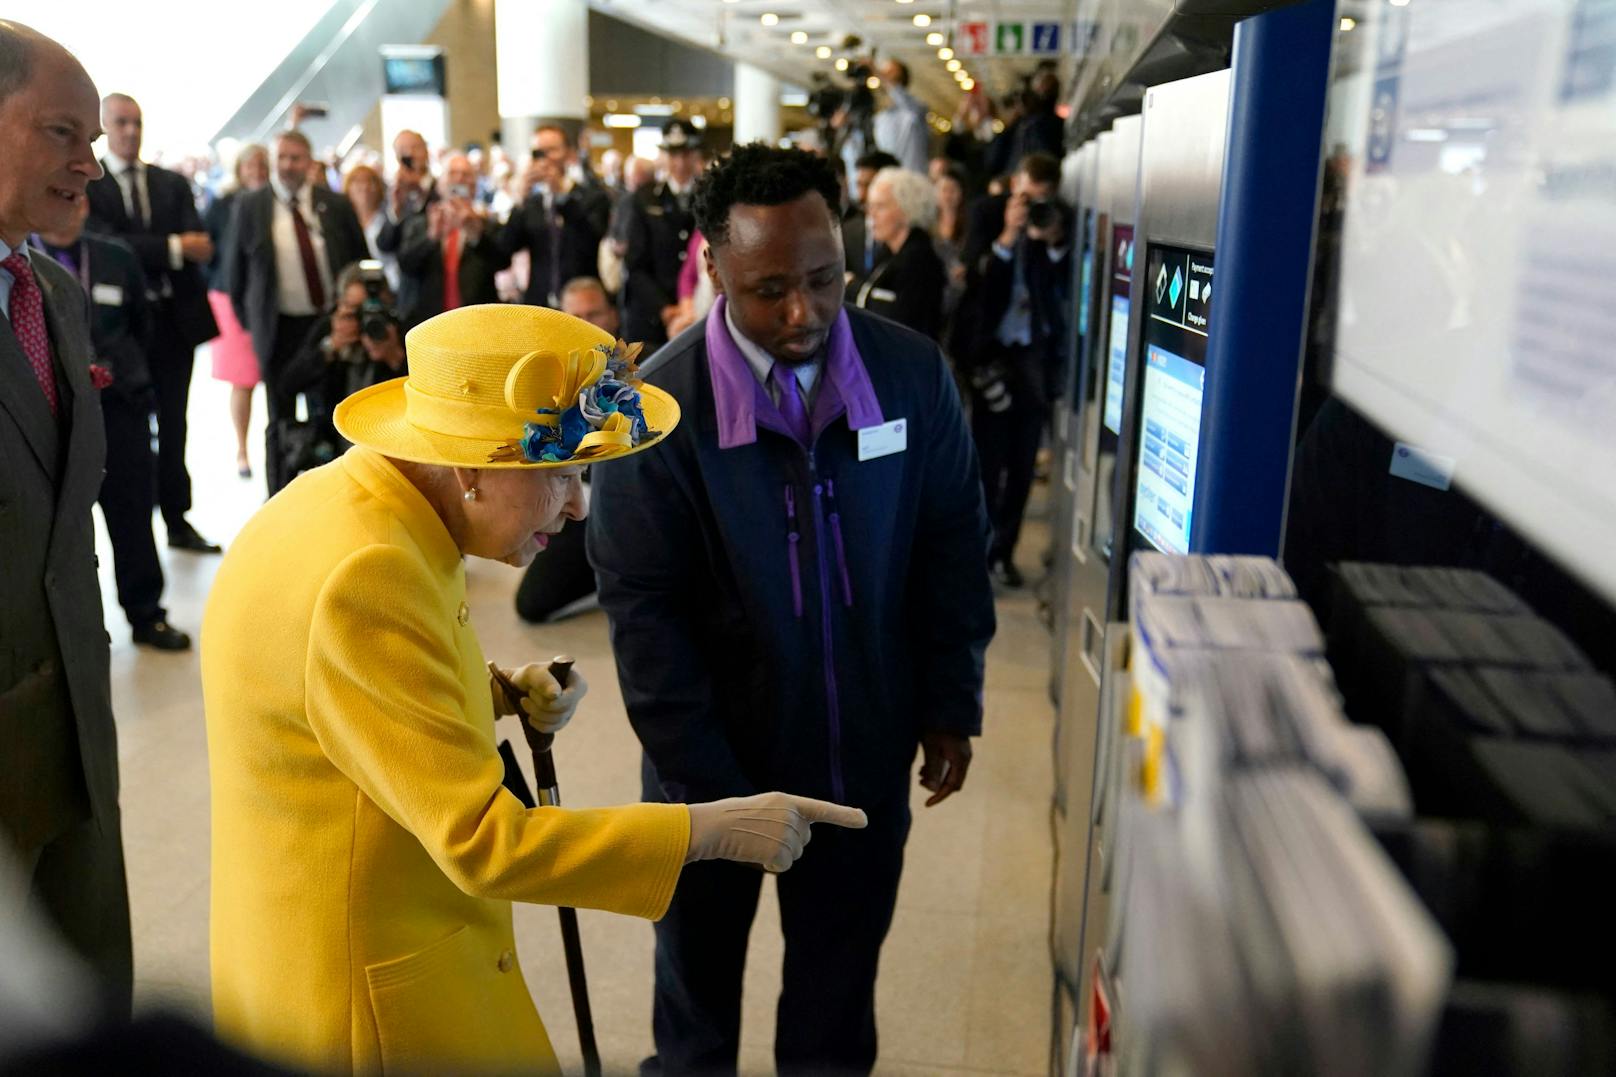 Selbstverständlich steigt auch eine Königin nicht ohne Ticket in die öffentlichen Verkehrsmittel ein. 